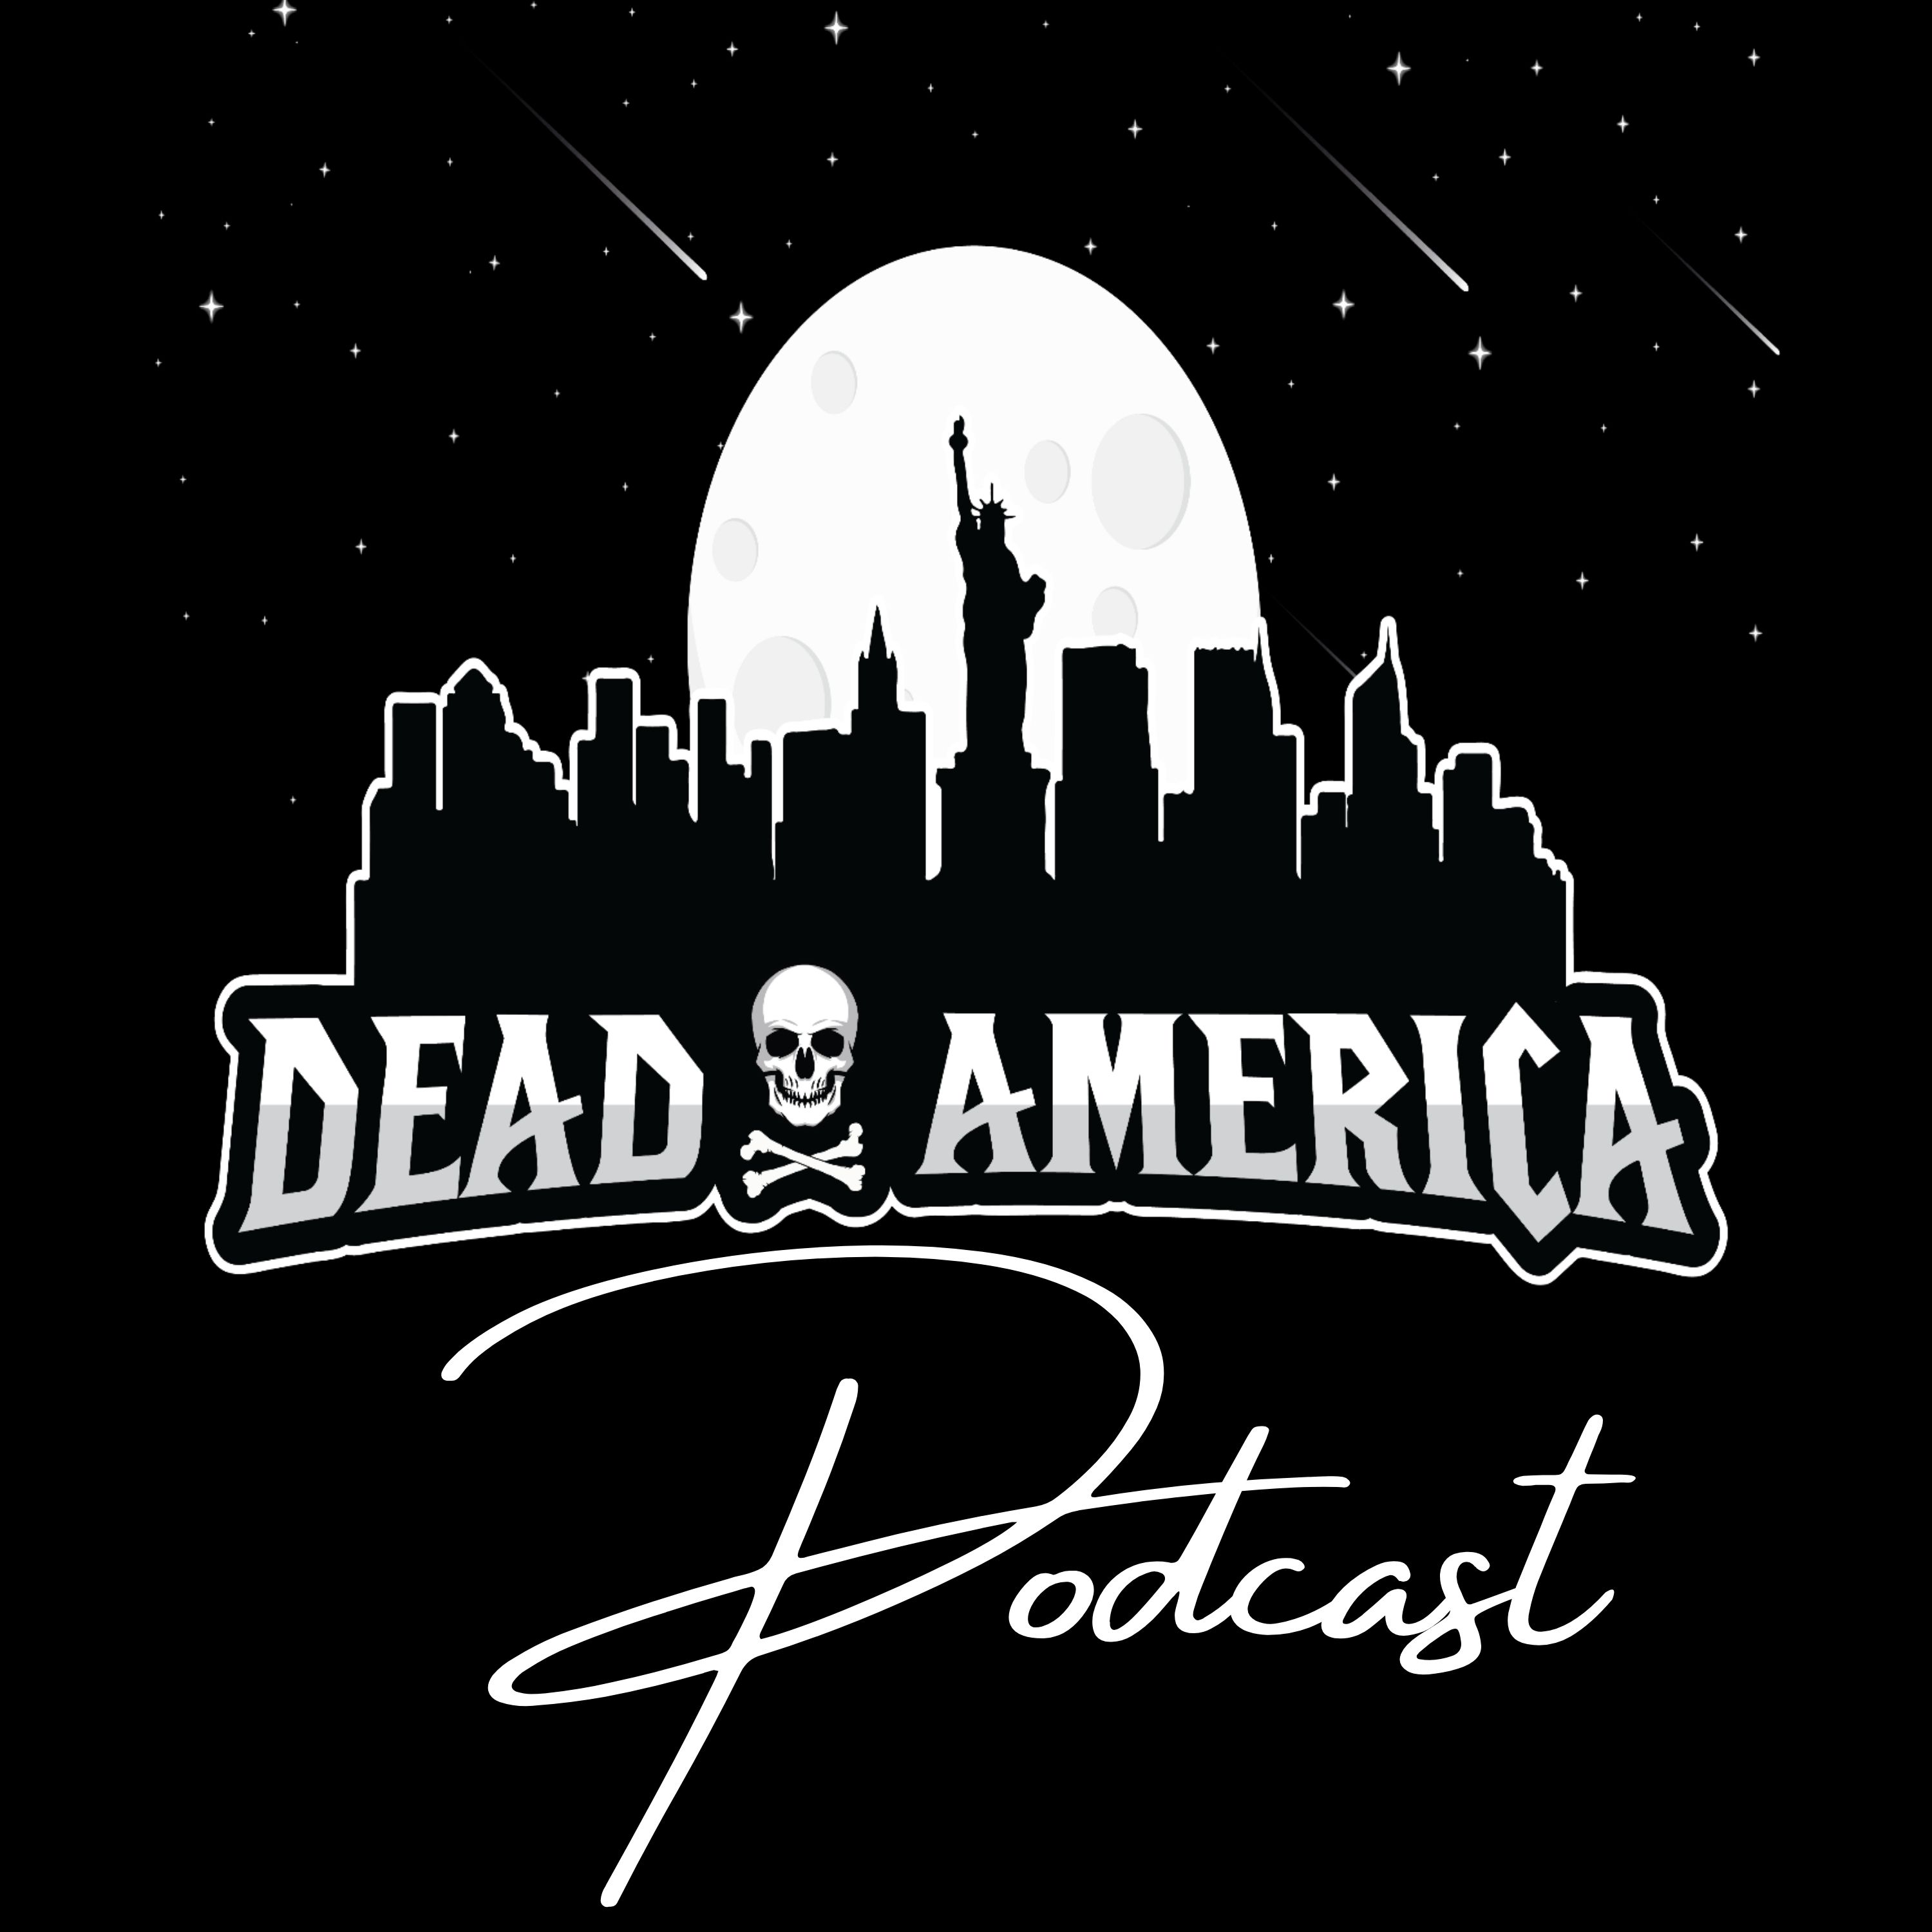 Artwork for podcast Dead America